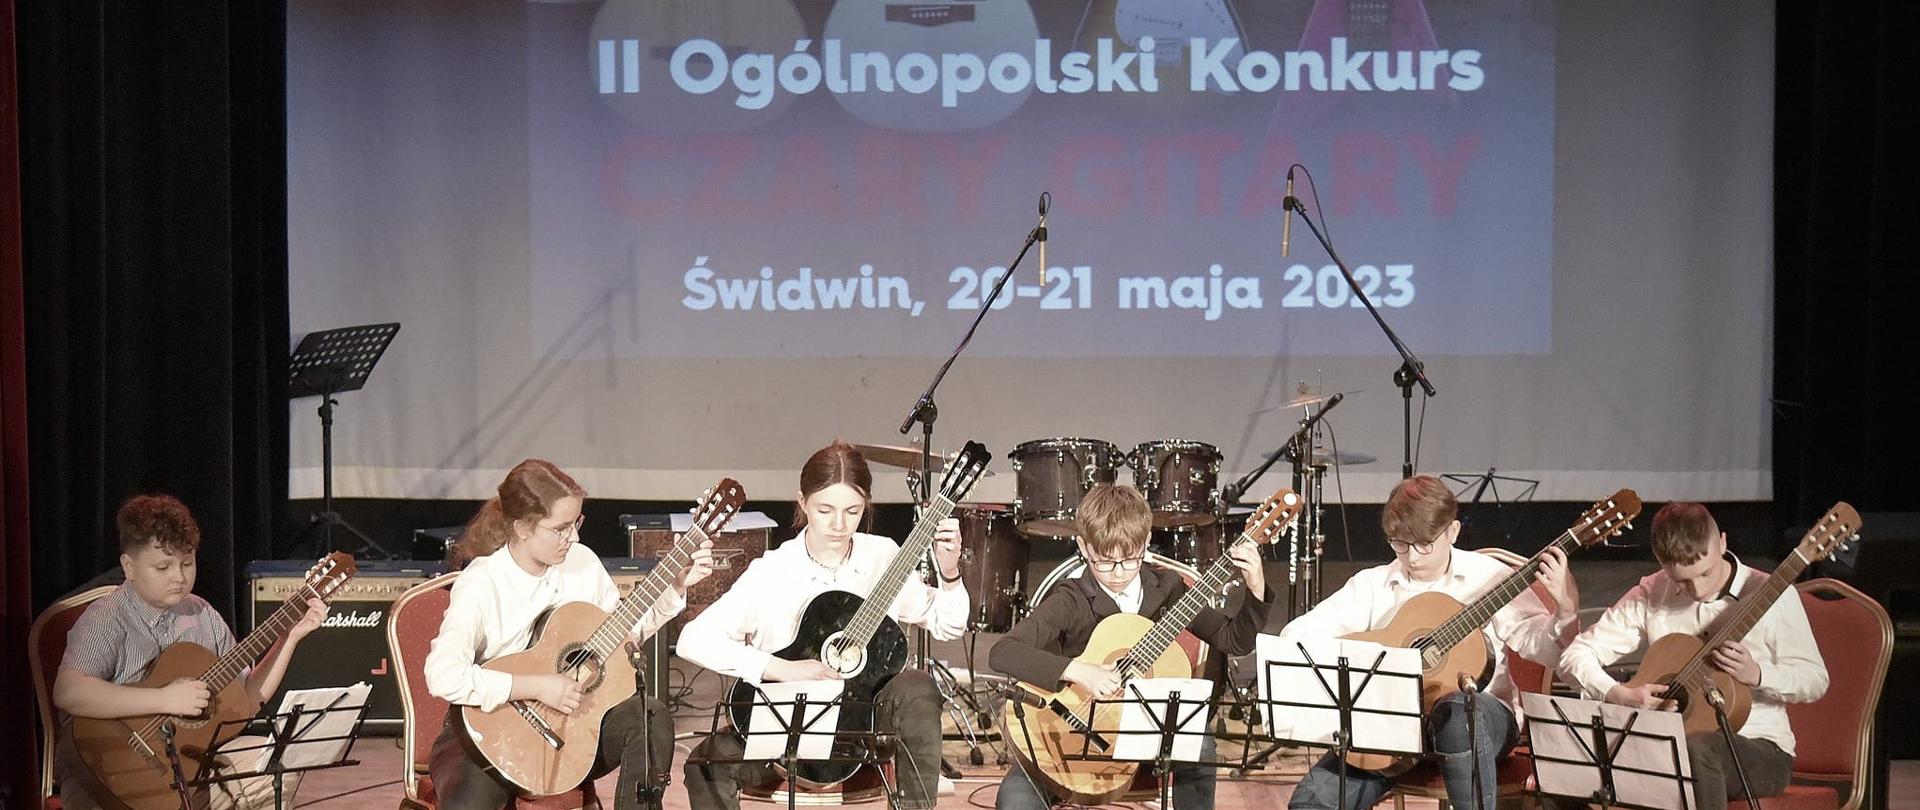 Uczniowie grają w sekstecie na gitarach na Ogólnopolskim Konkursie Gitarowym w Świdwinie